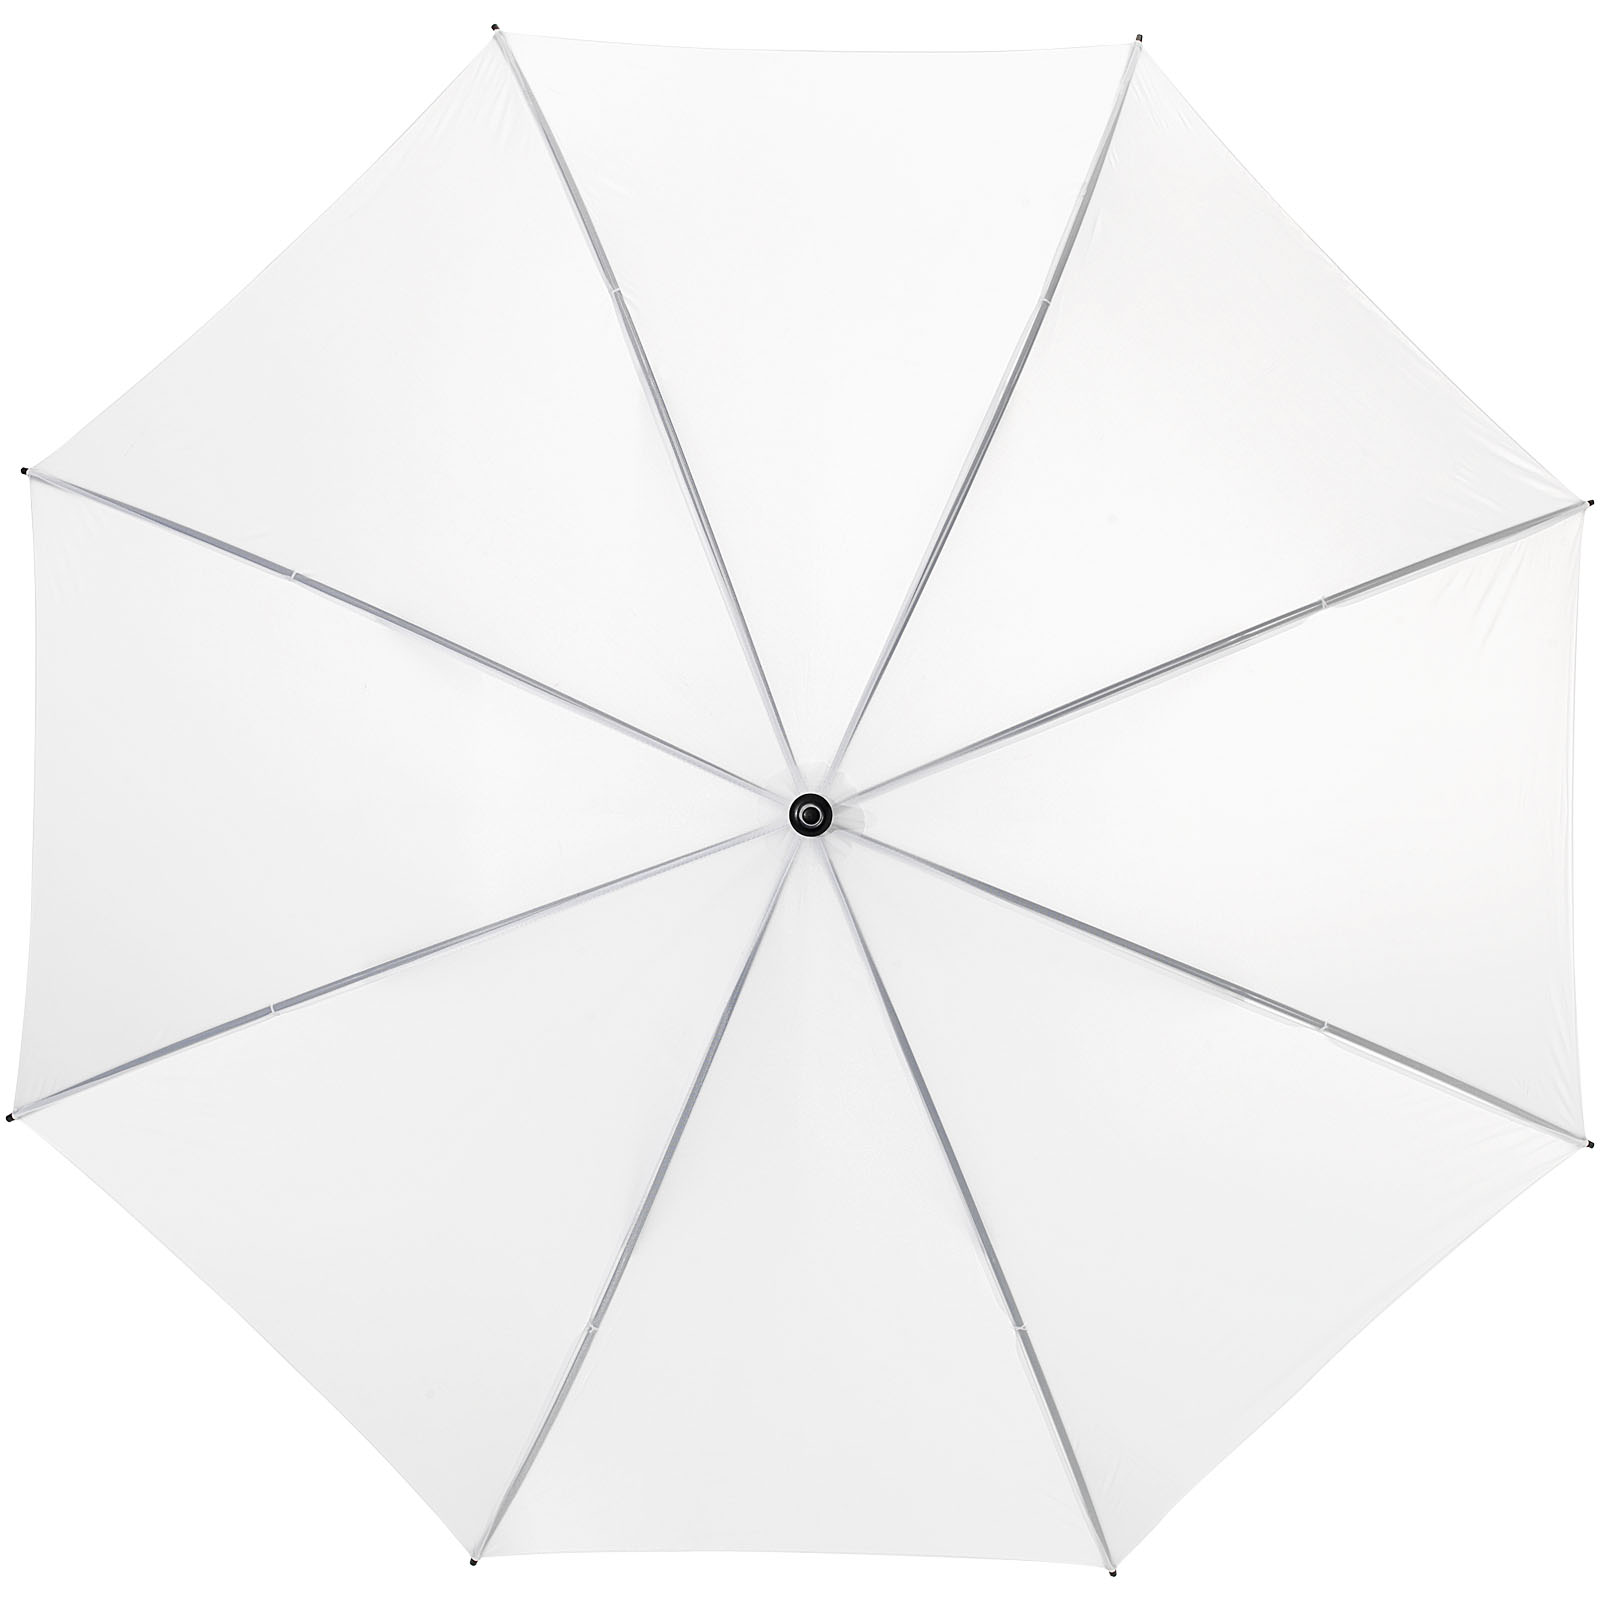 Parapluies de golf publicitaires - Parapluie golf 30